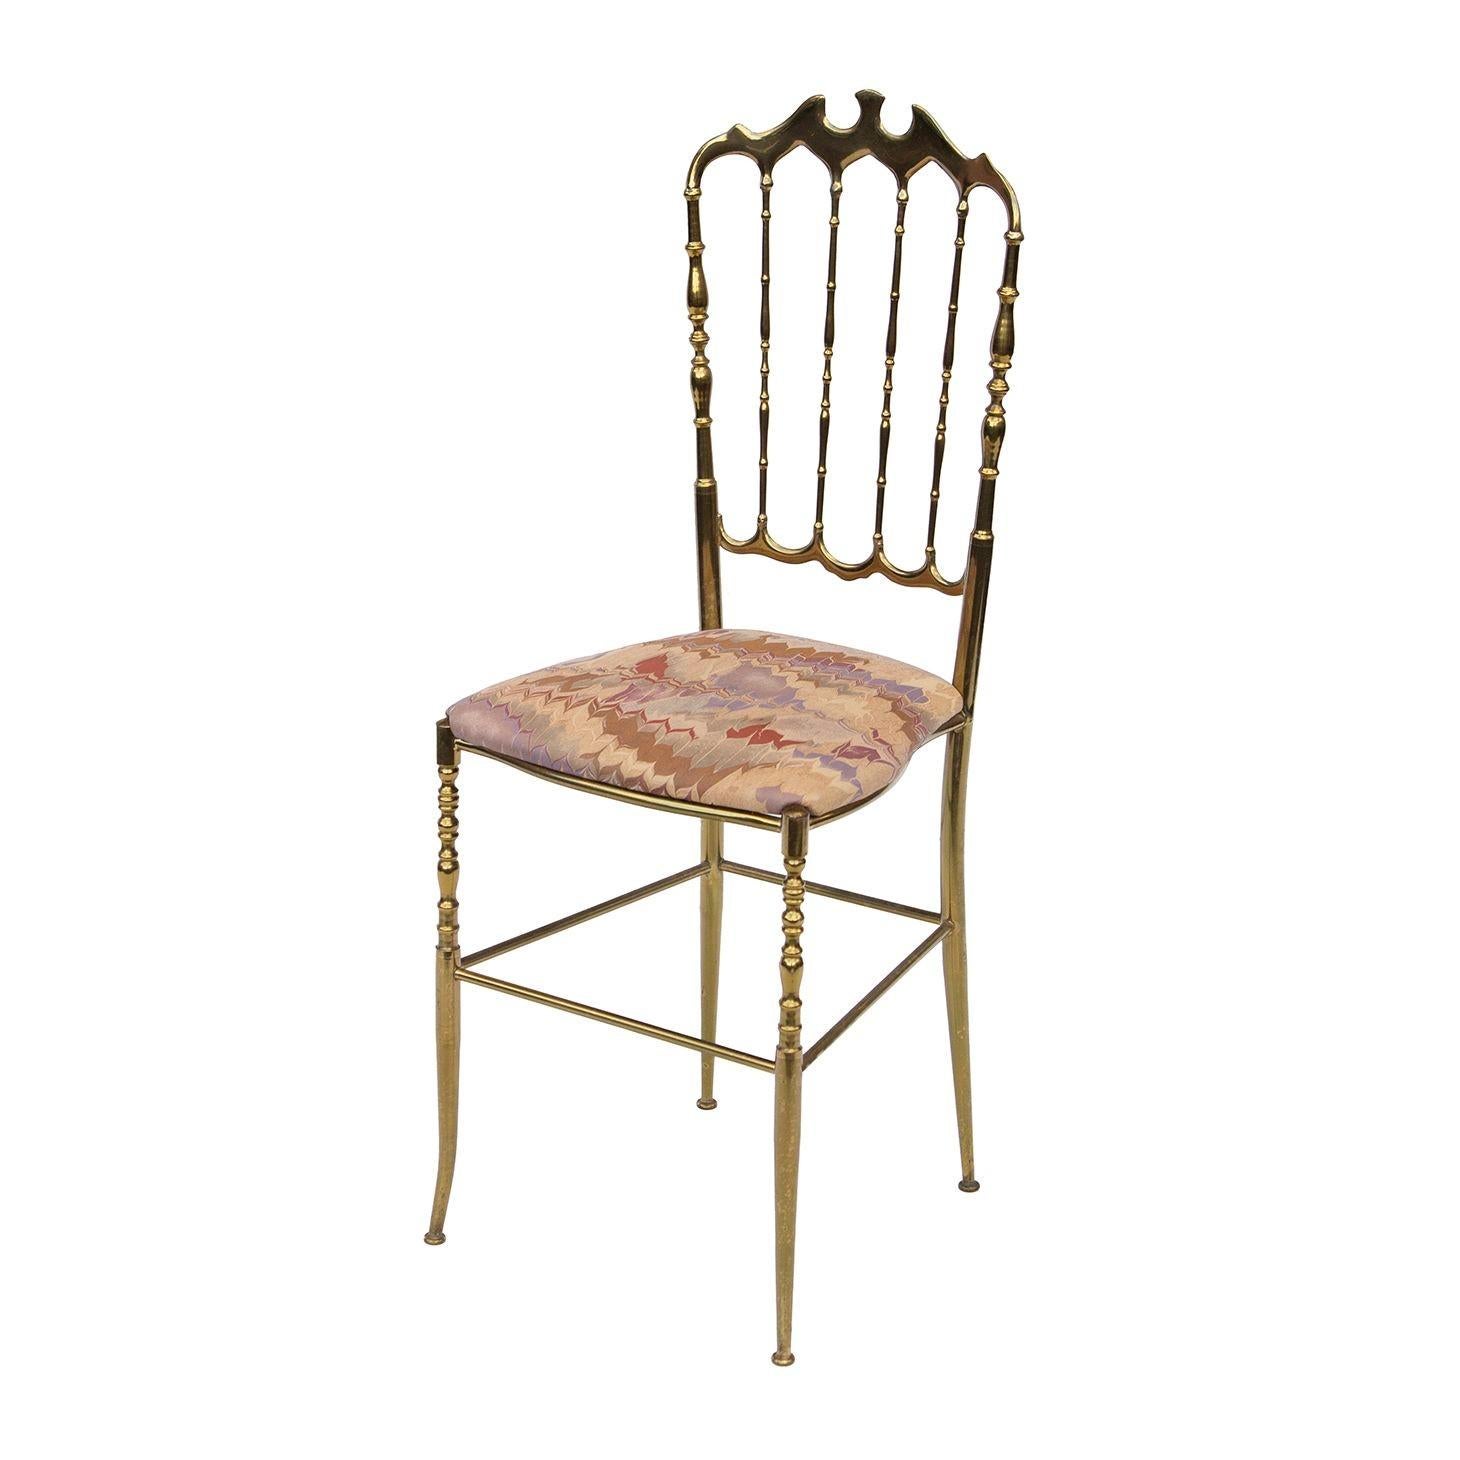 Italien, 1960er Jahre
Chiavari Beistellstuhl aus italienischem Messing. Der Rahmen aus poliertem, massivem Messing ist schlank und schön. Dieser Stuhl ist zierlicher als die meisten anderen.
ZUSTANDSNOTEN: Massiver Messingrahmen ist in sehr gutem